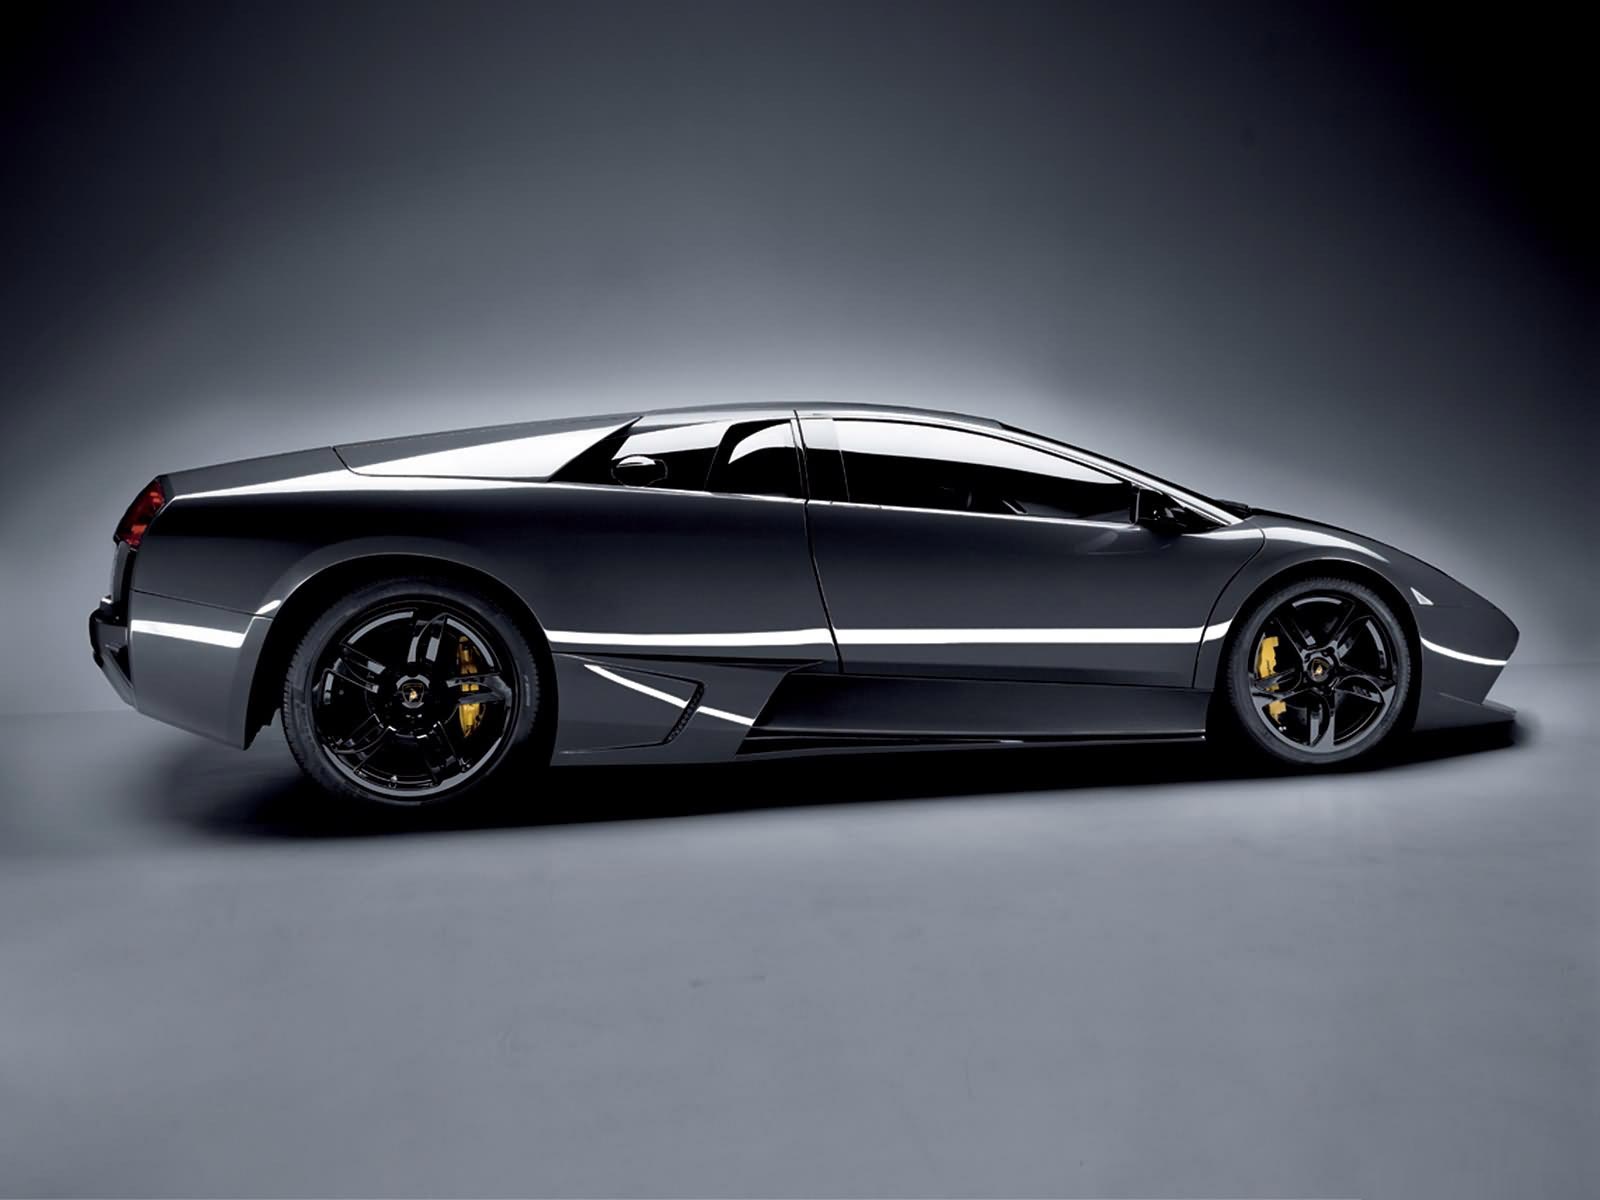  of Super Sporty looks of 2012 Lamborghini Gallardo Coupe Car picture